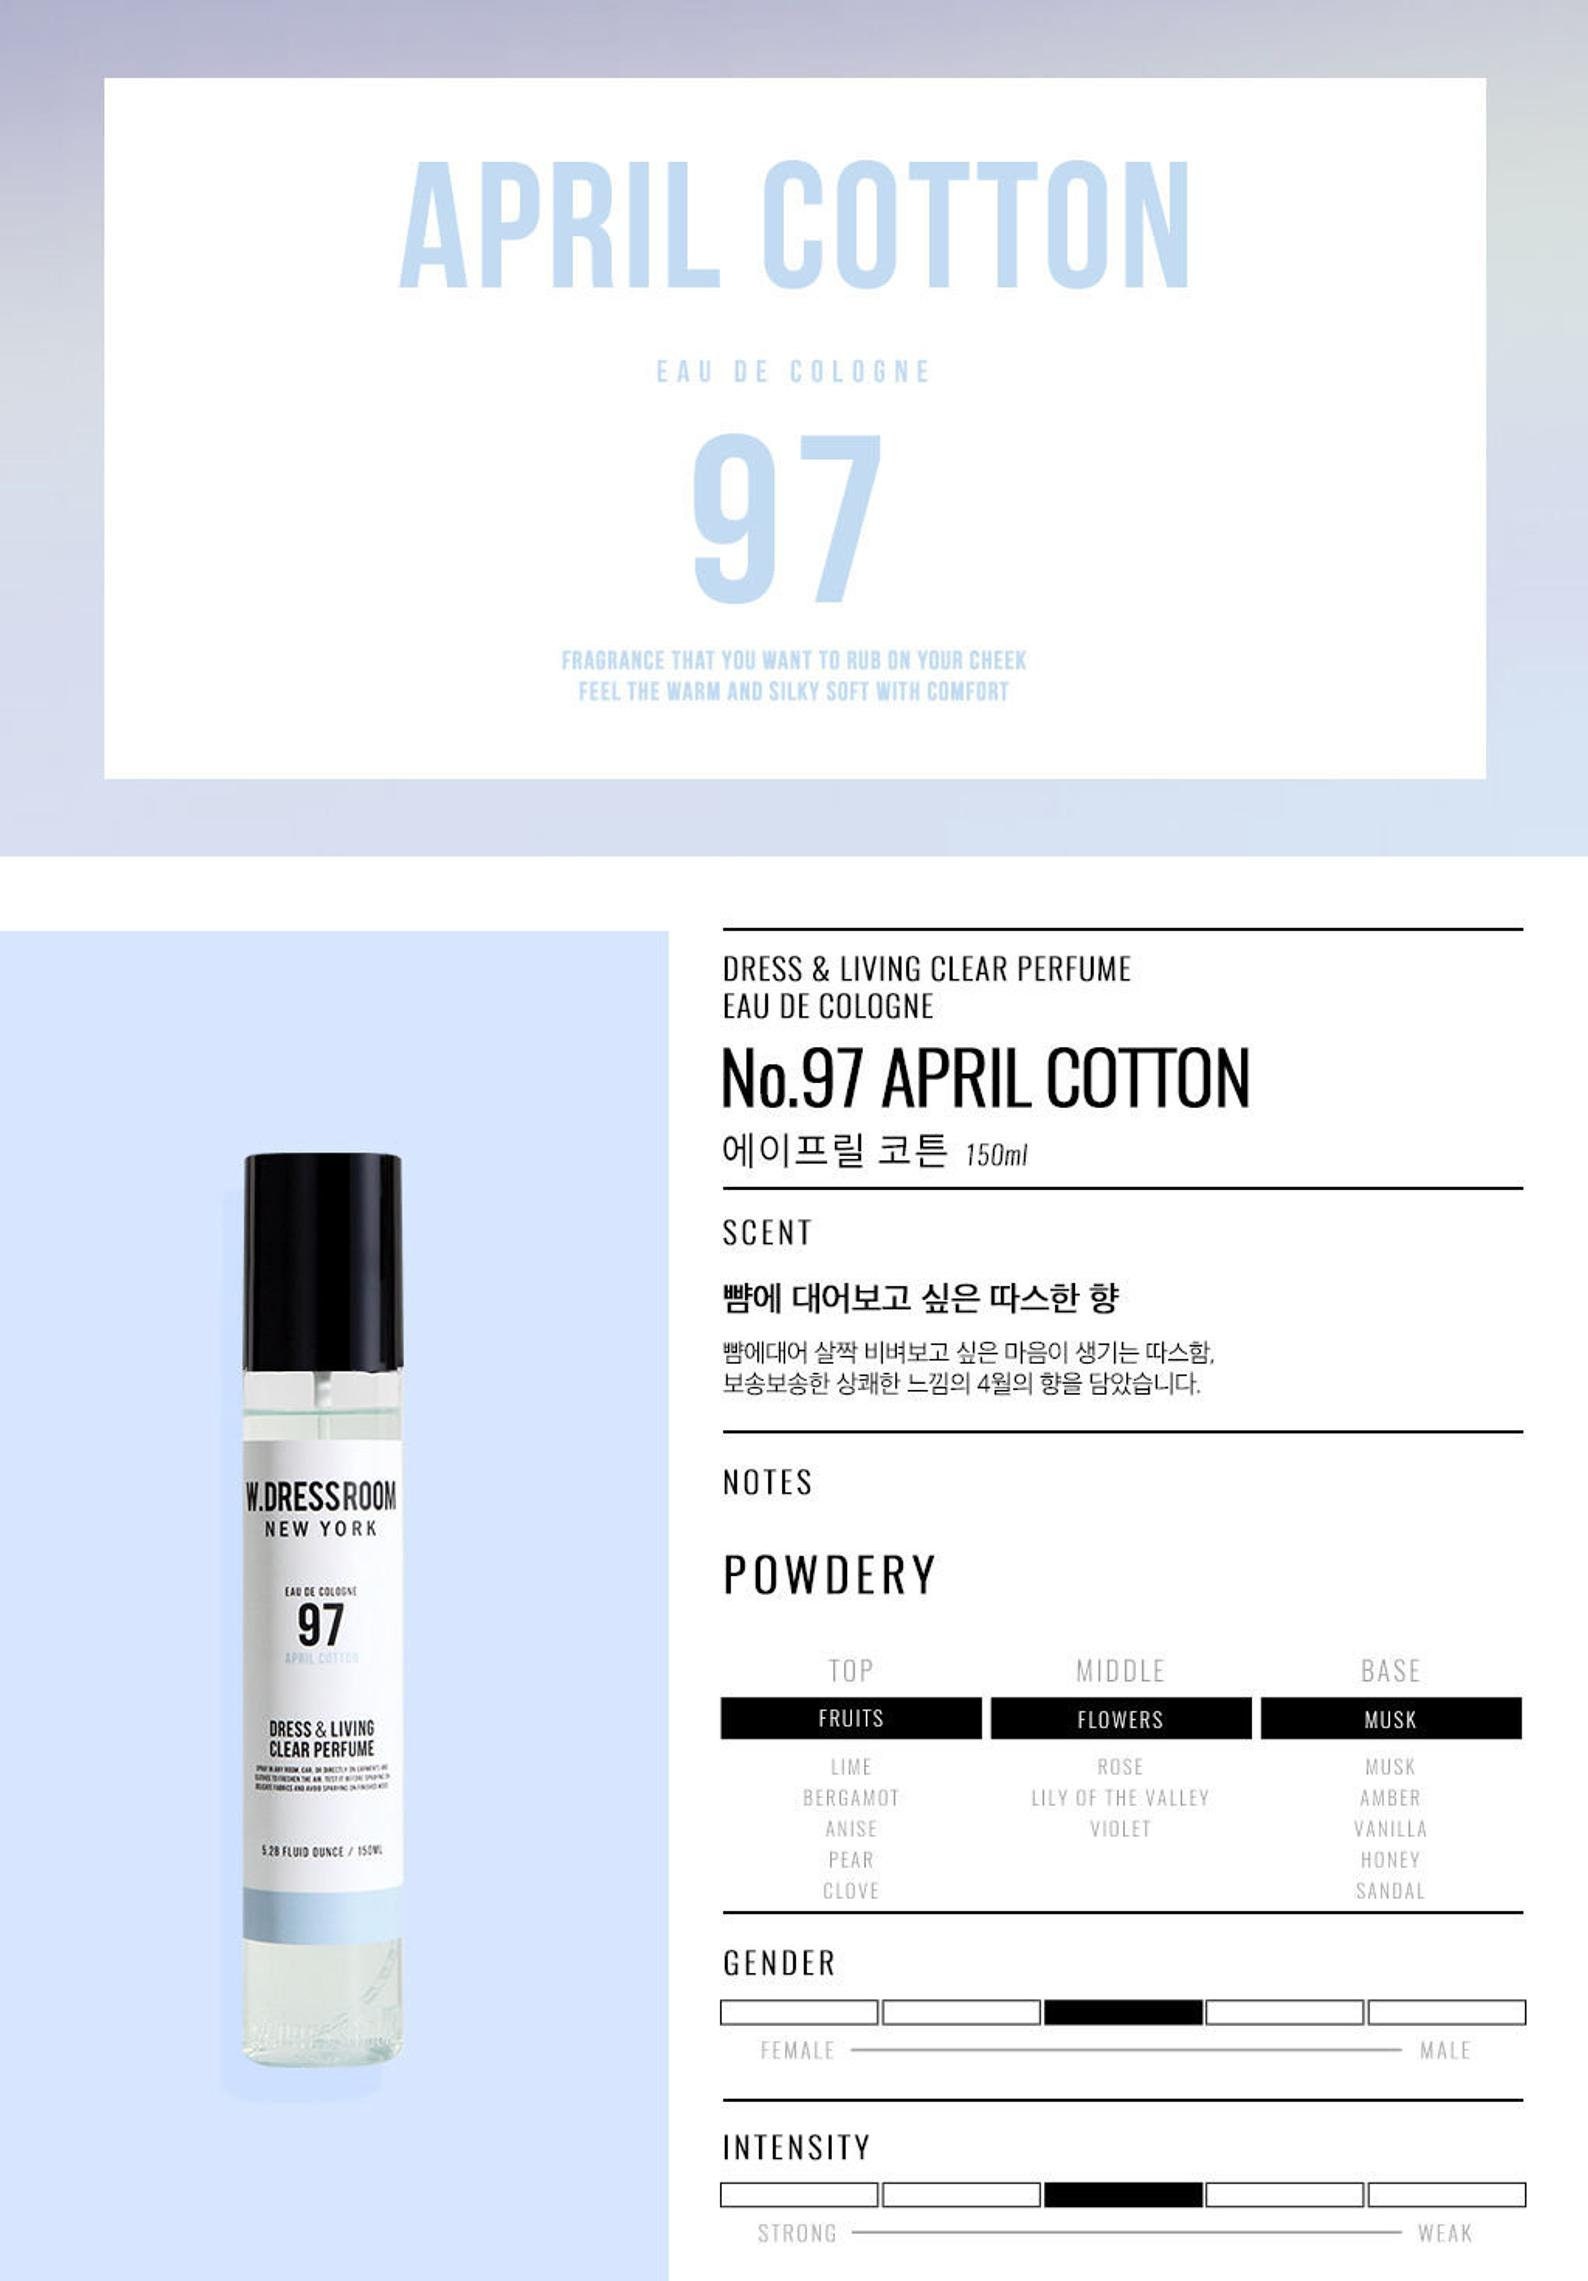 BTS Eau de Cologne Jungkook &V Perfume Gift Limited Ed. | Etsy